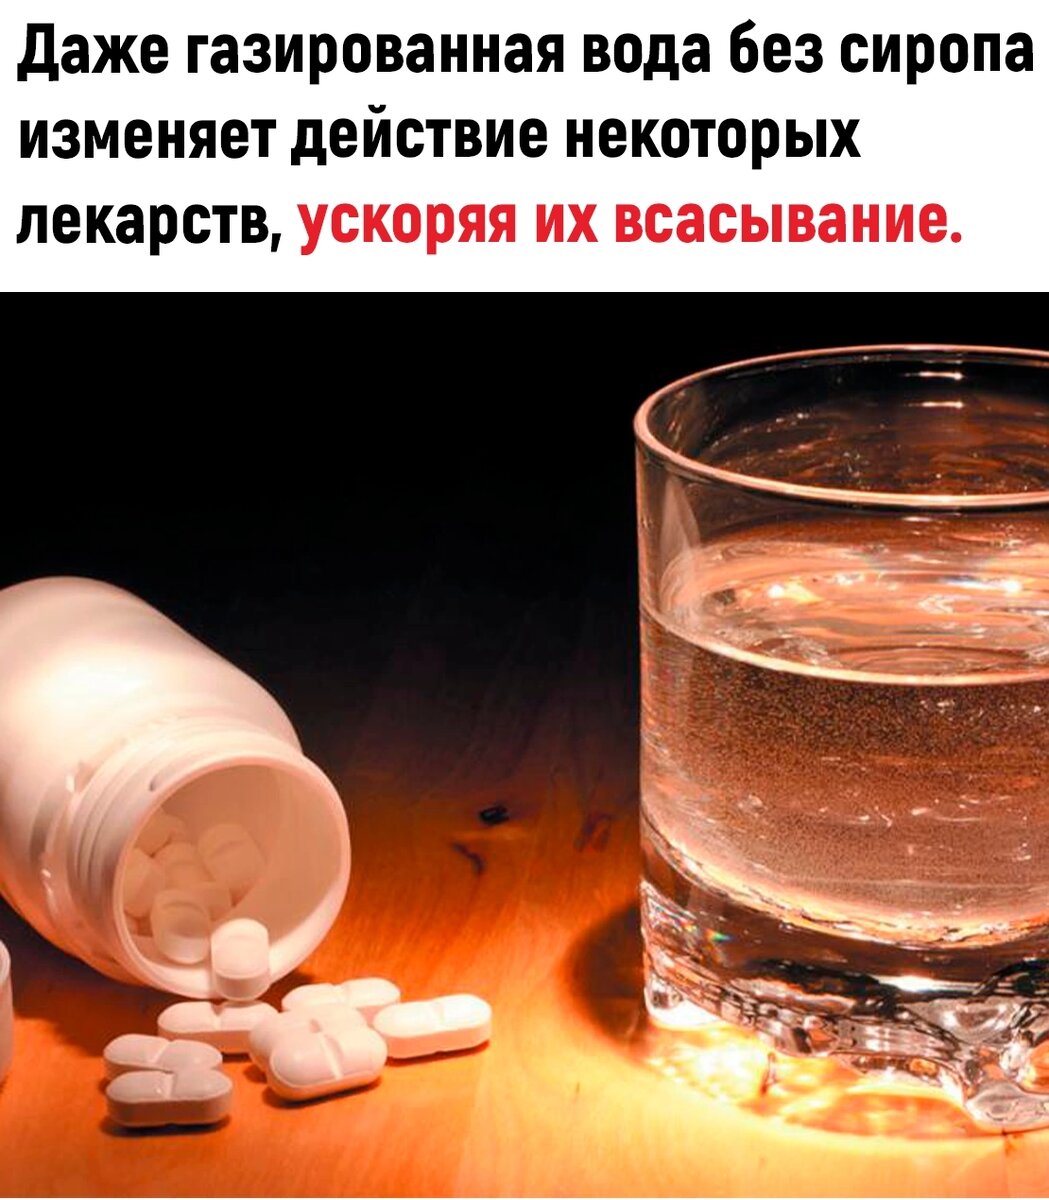 Таблетки надо запивать водой. Painkiller drug. Таблекта и стакан воды. Лекарства в воде. Таблетки и стакан воды.